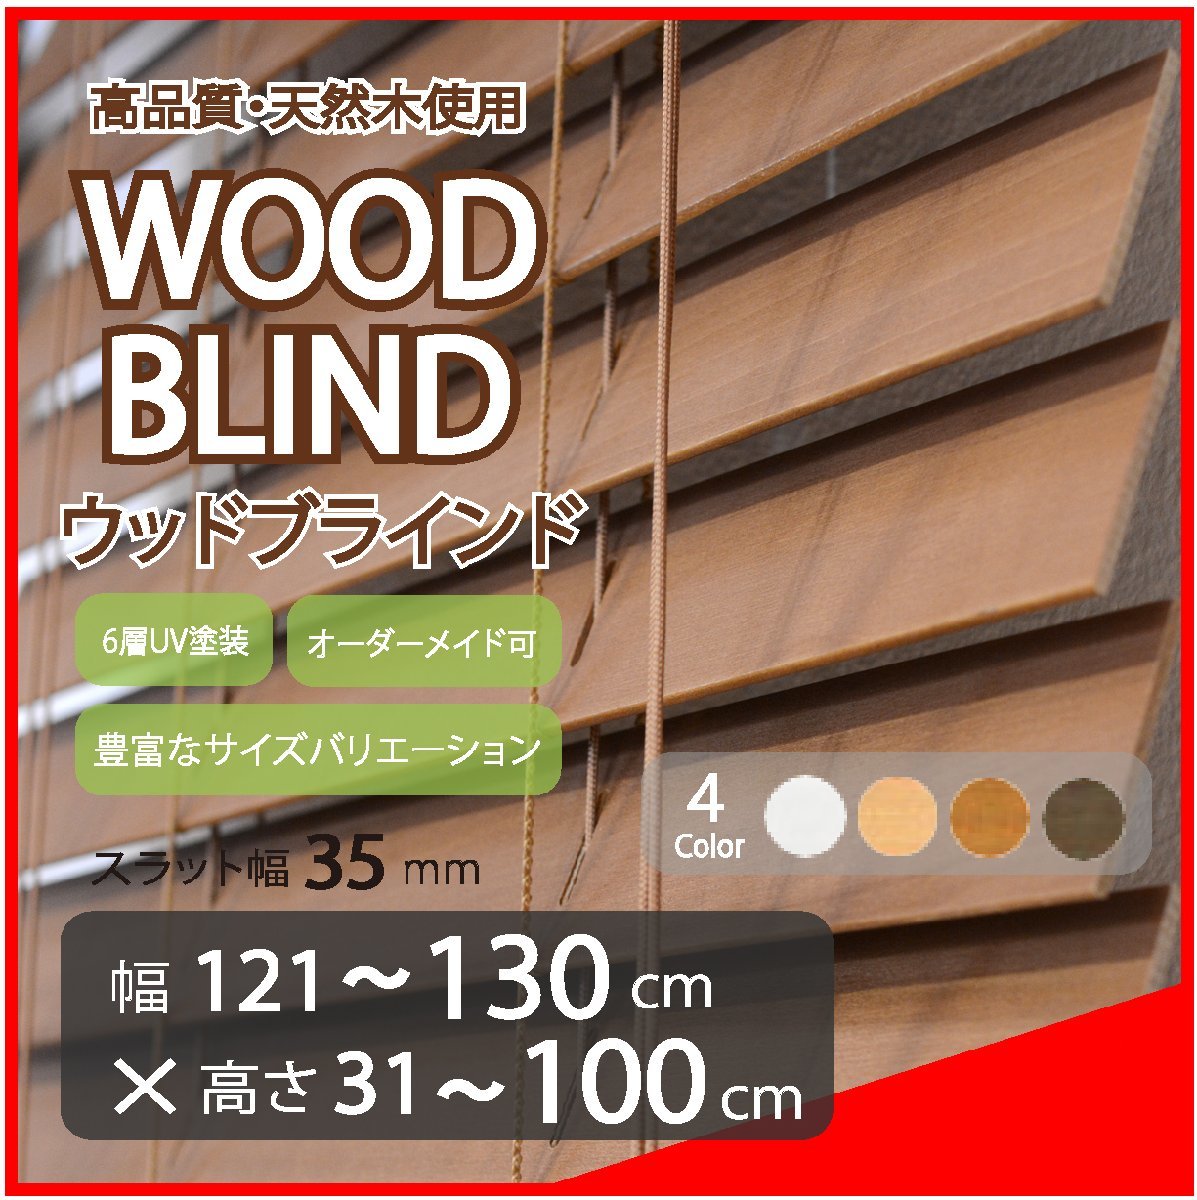 窓枠に合わせてサイズ加工が可能 高品質 木製 ウッド ブラインド オーダー可 スラット(羽根)幅35mm 幅121～130cm×高さ31～100cm 